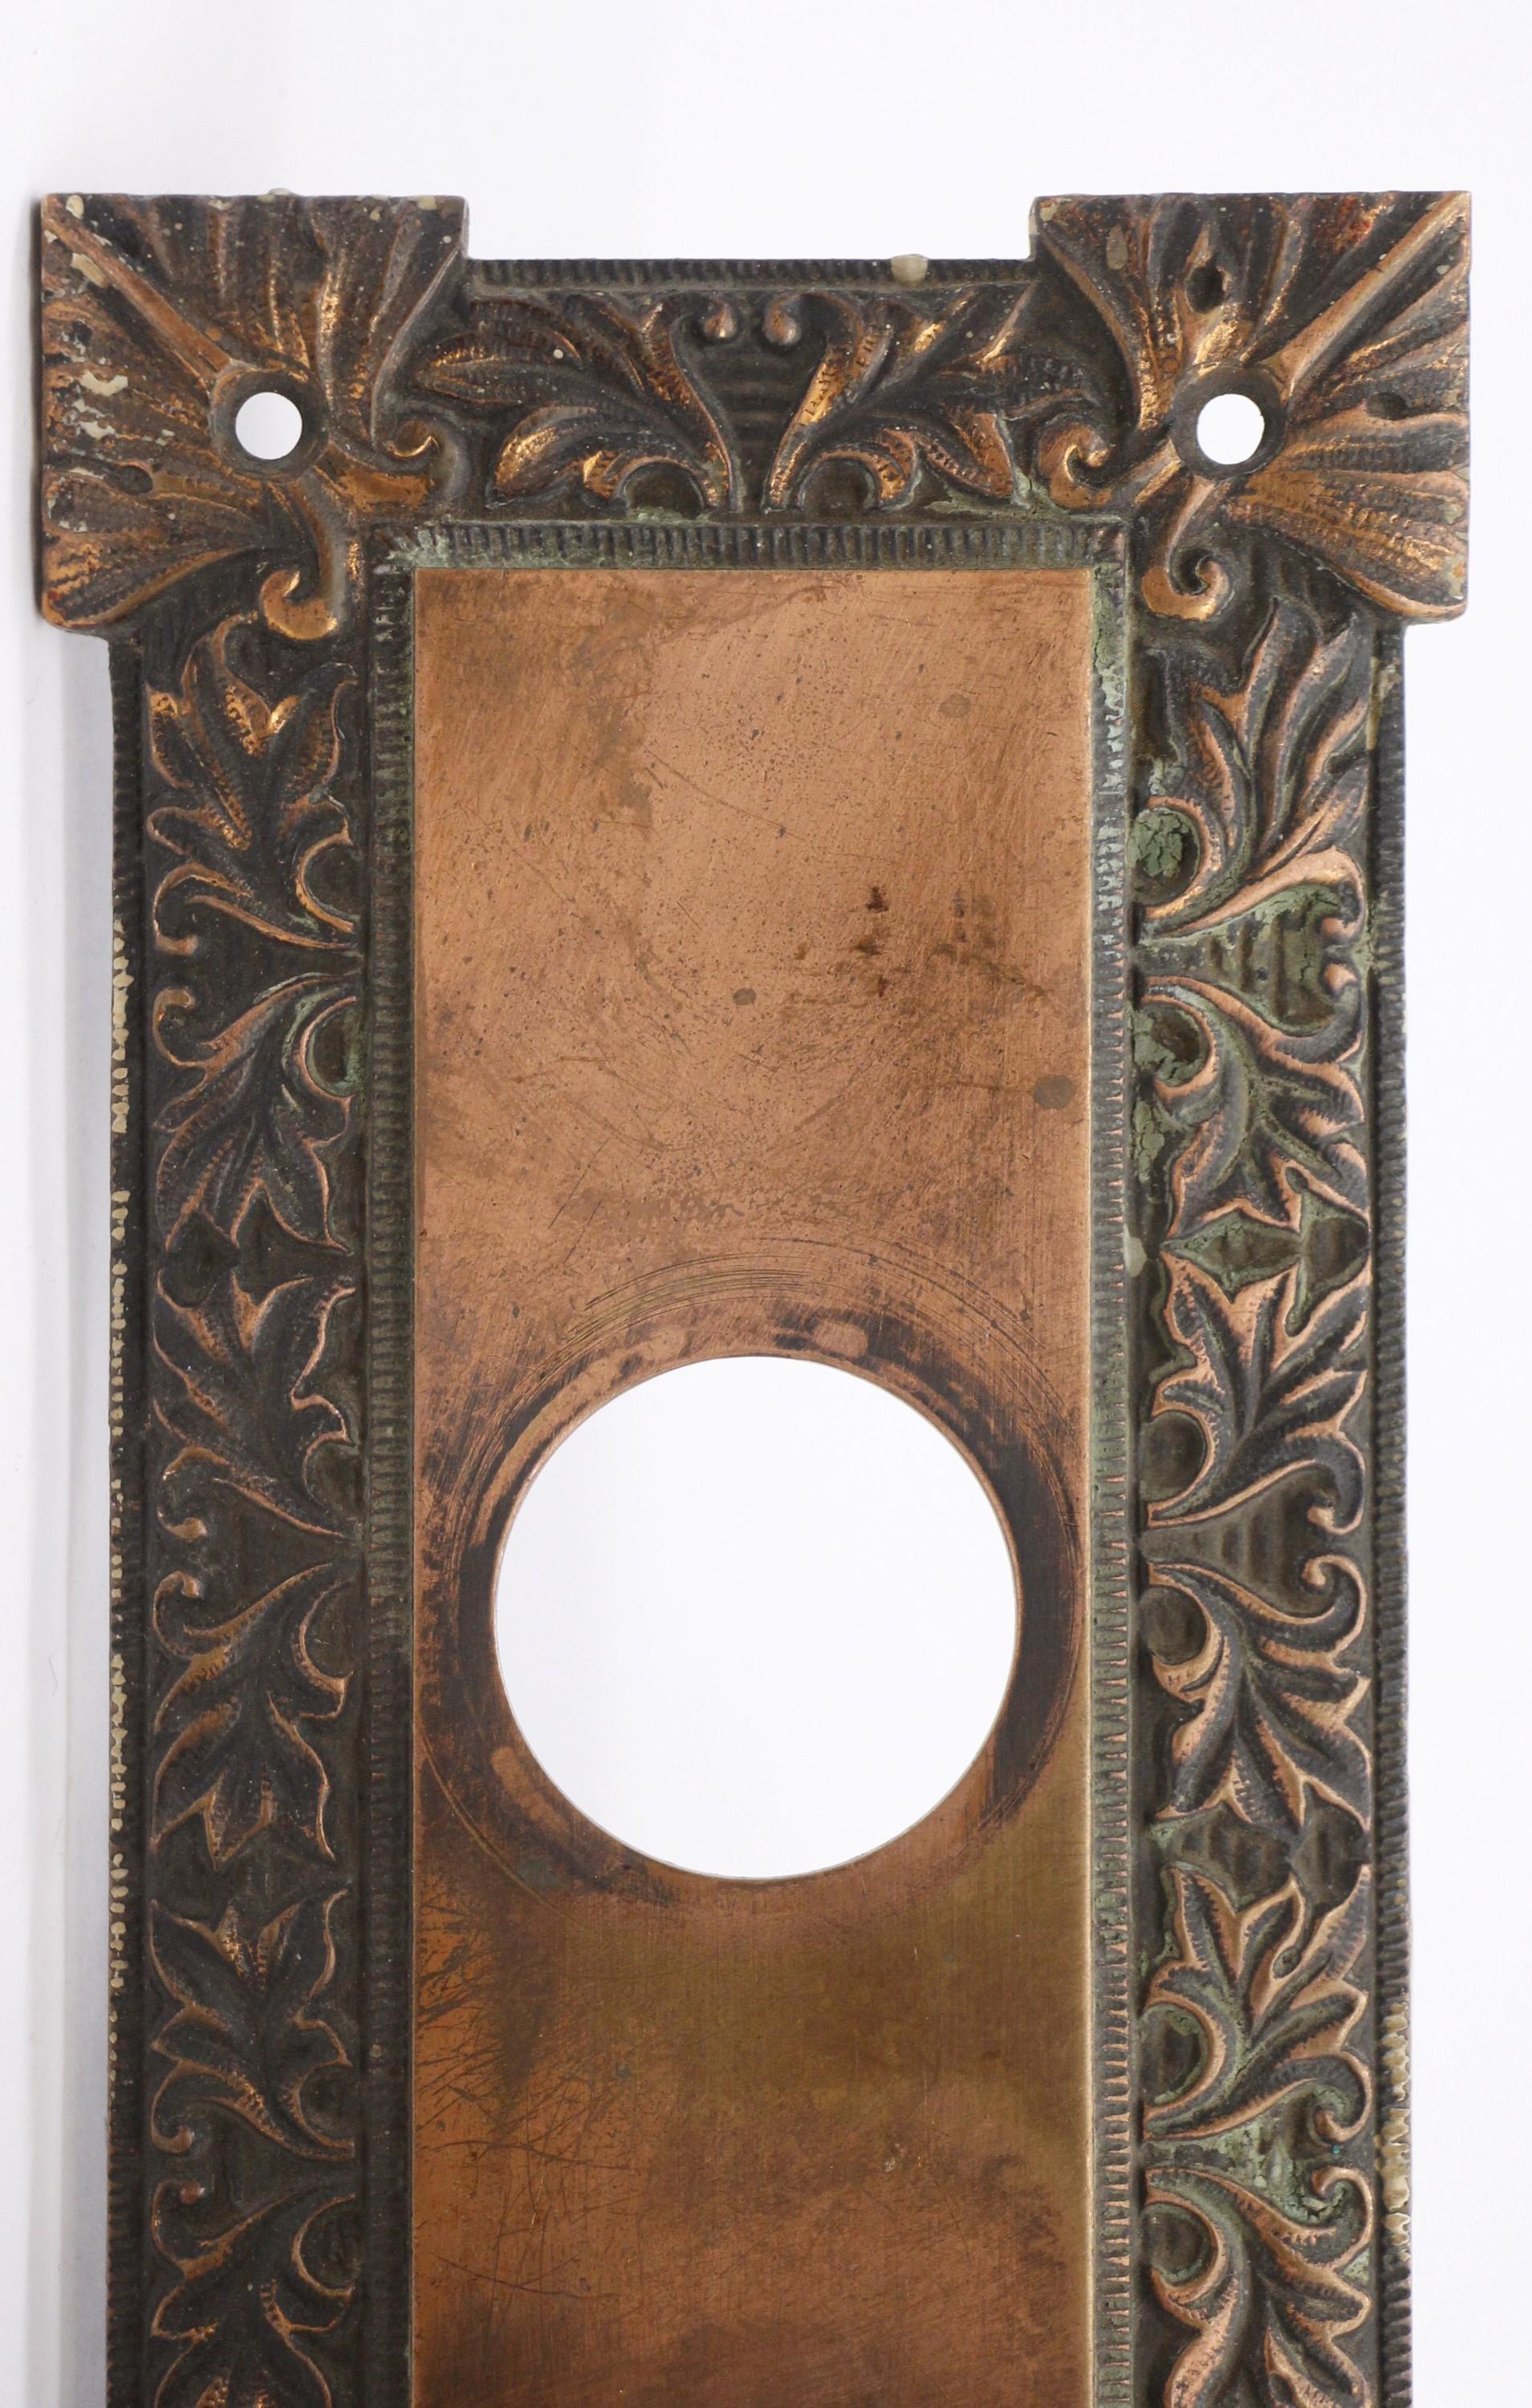 Cet ensemble de boutons de porte concentriques en bronze, datant du début du 20e siècle, fait partie du groupe M-One. L'ensemble comprend deux boutons avec une tige assortie, une plaque arrière extérieure avec une ouverture pour la serrure et une